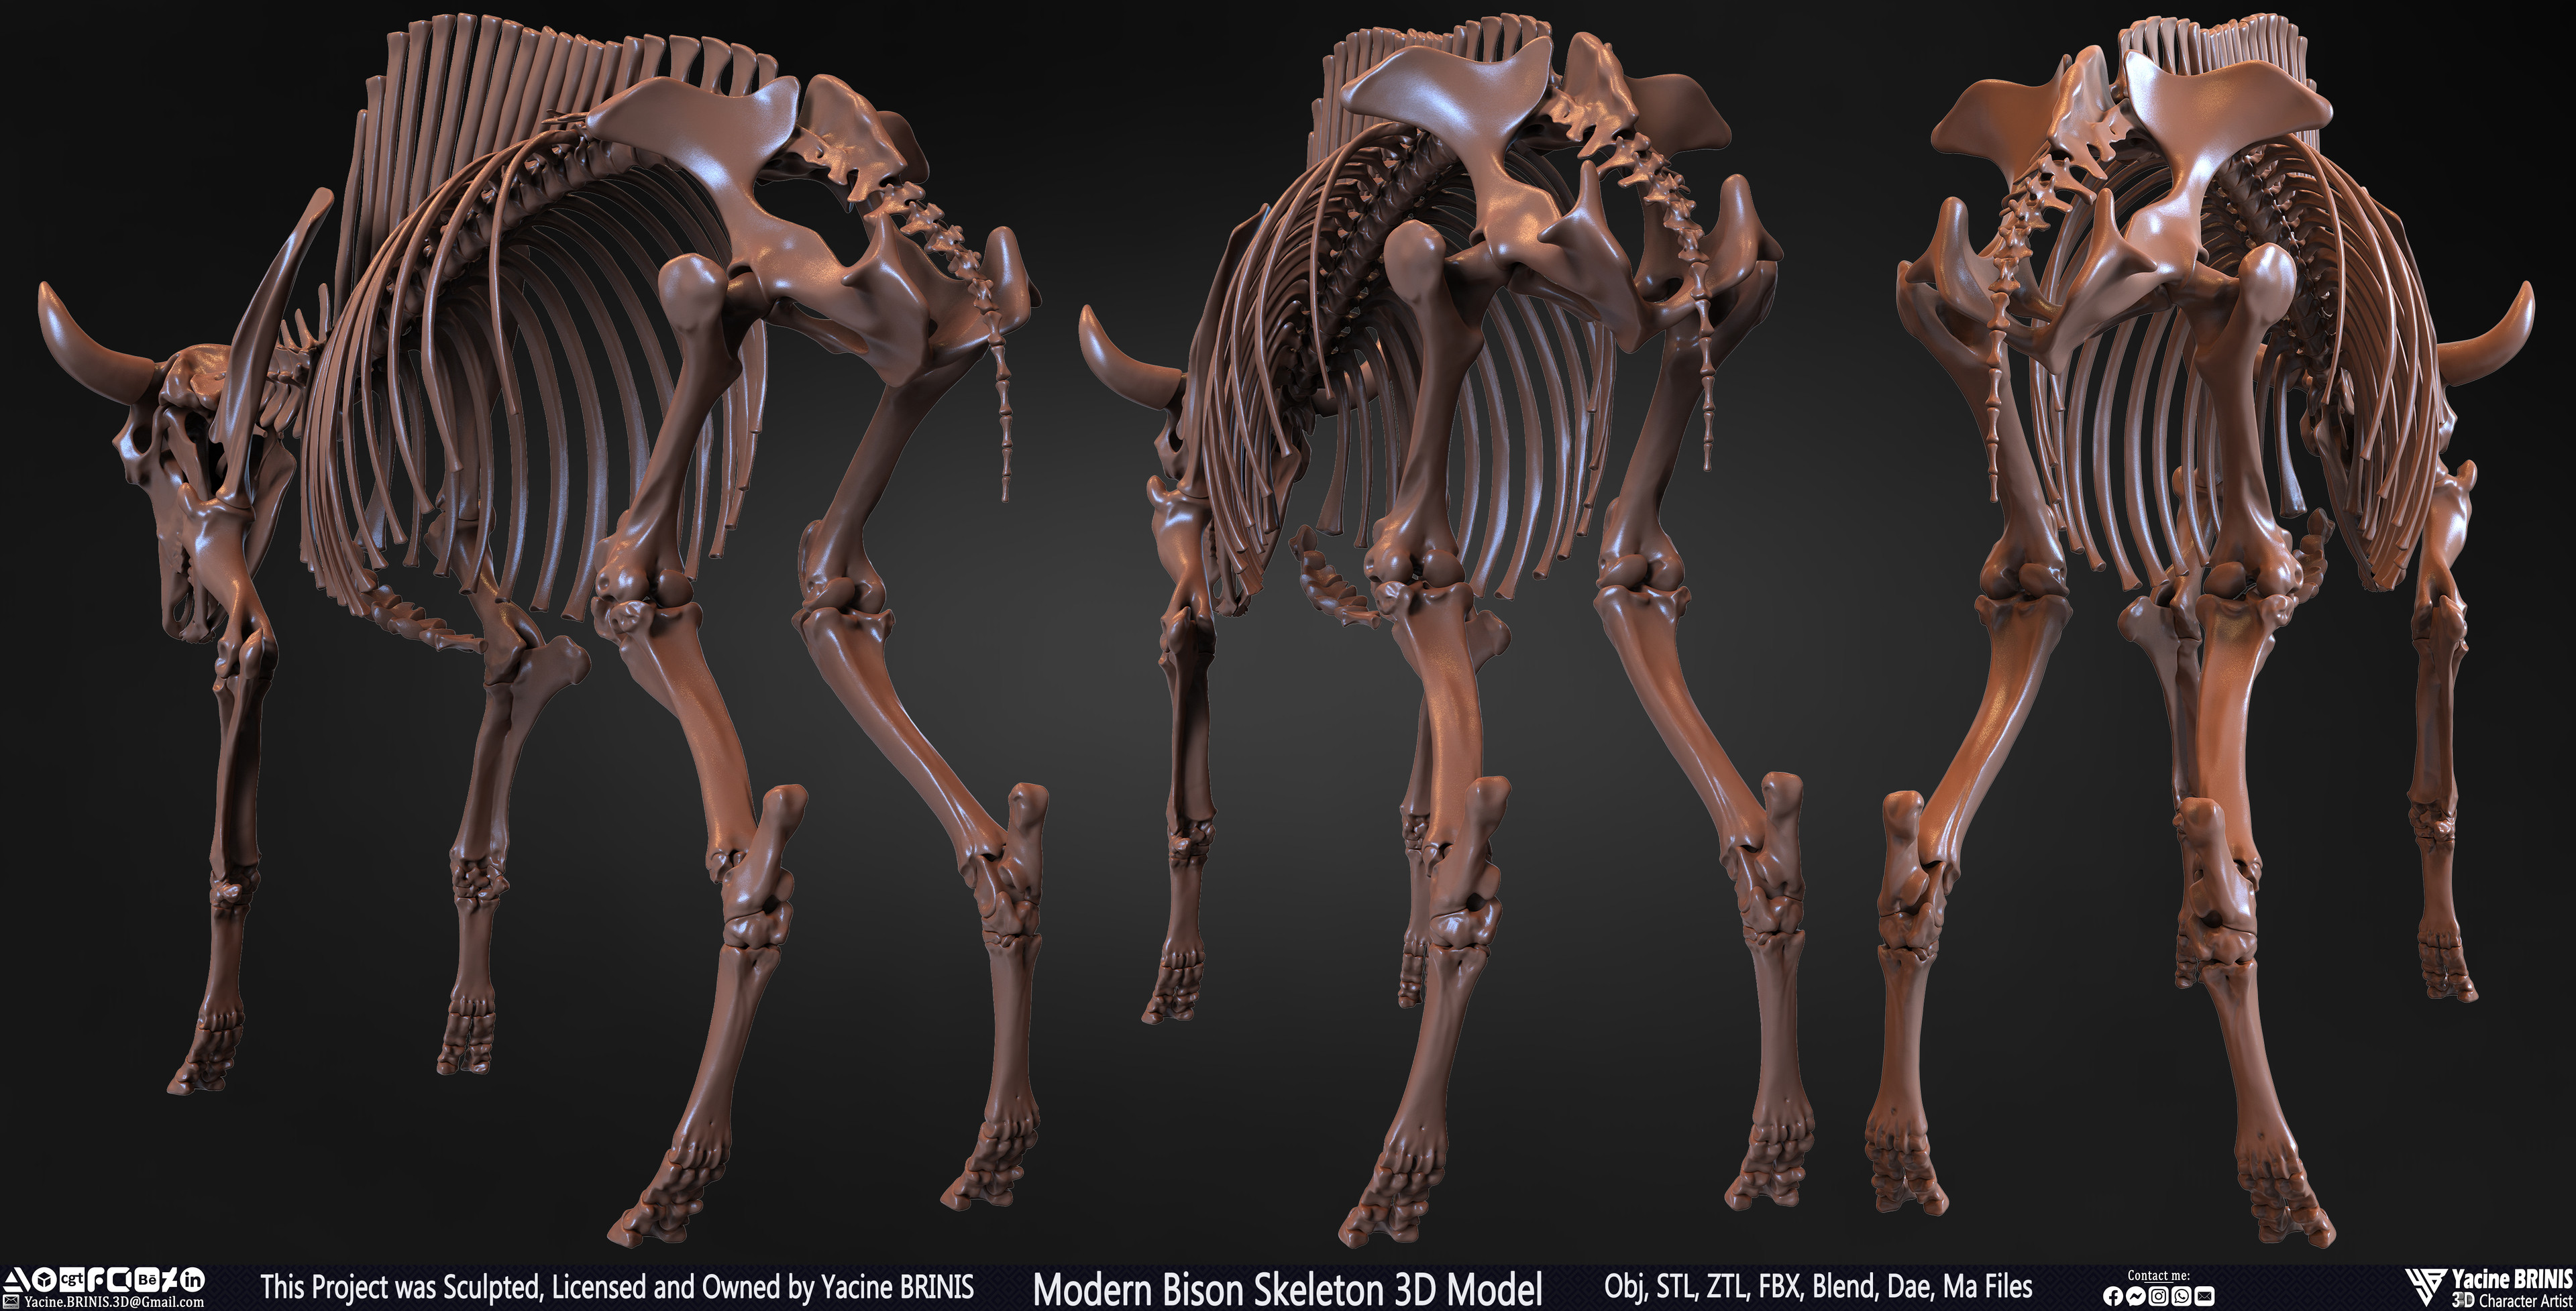 Modern Bison Skeleton 3D Model Sculpted by Yacine BRINIS Set 002